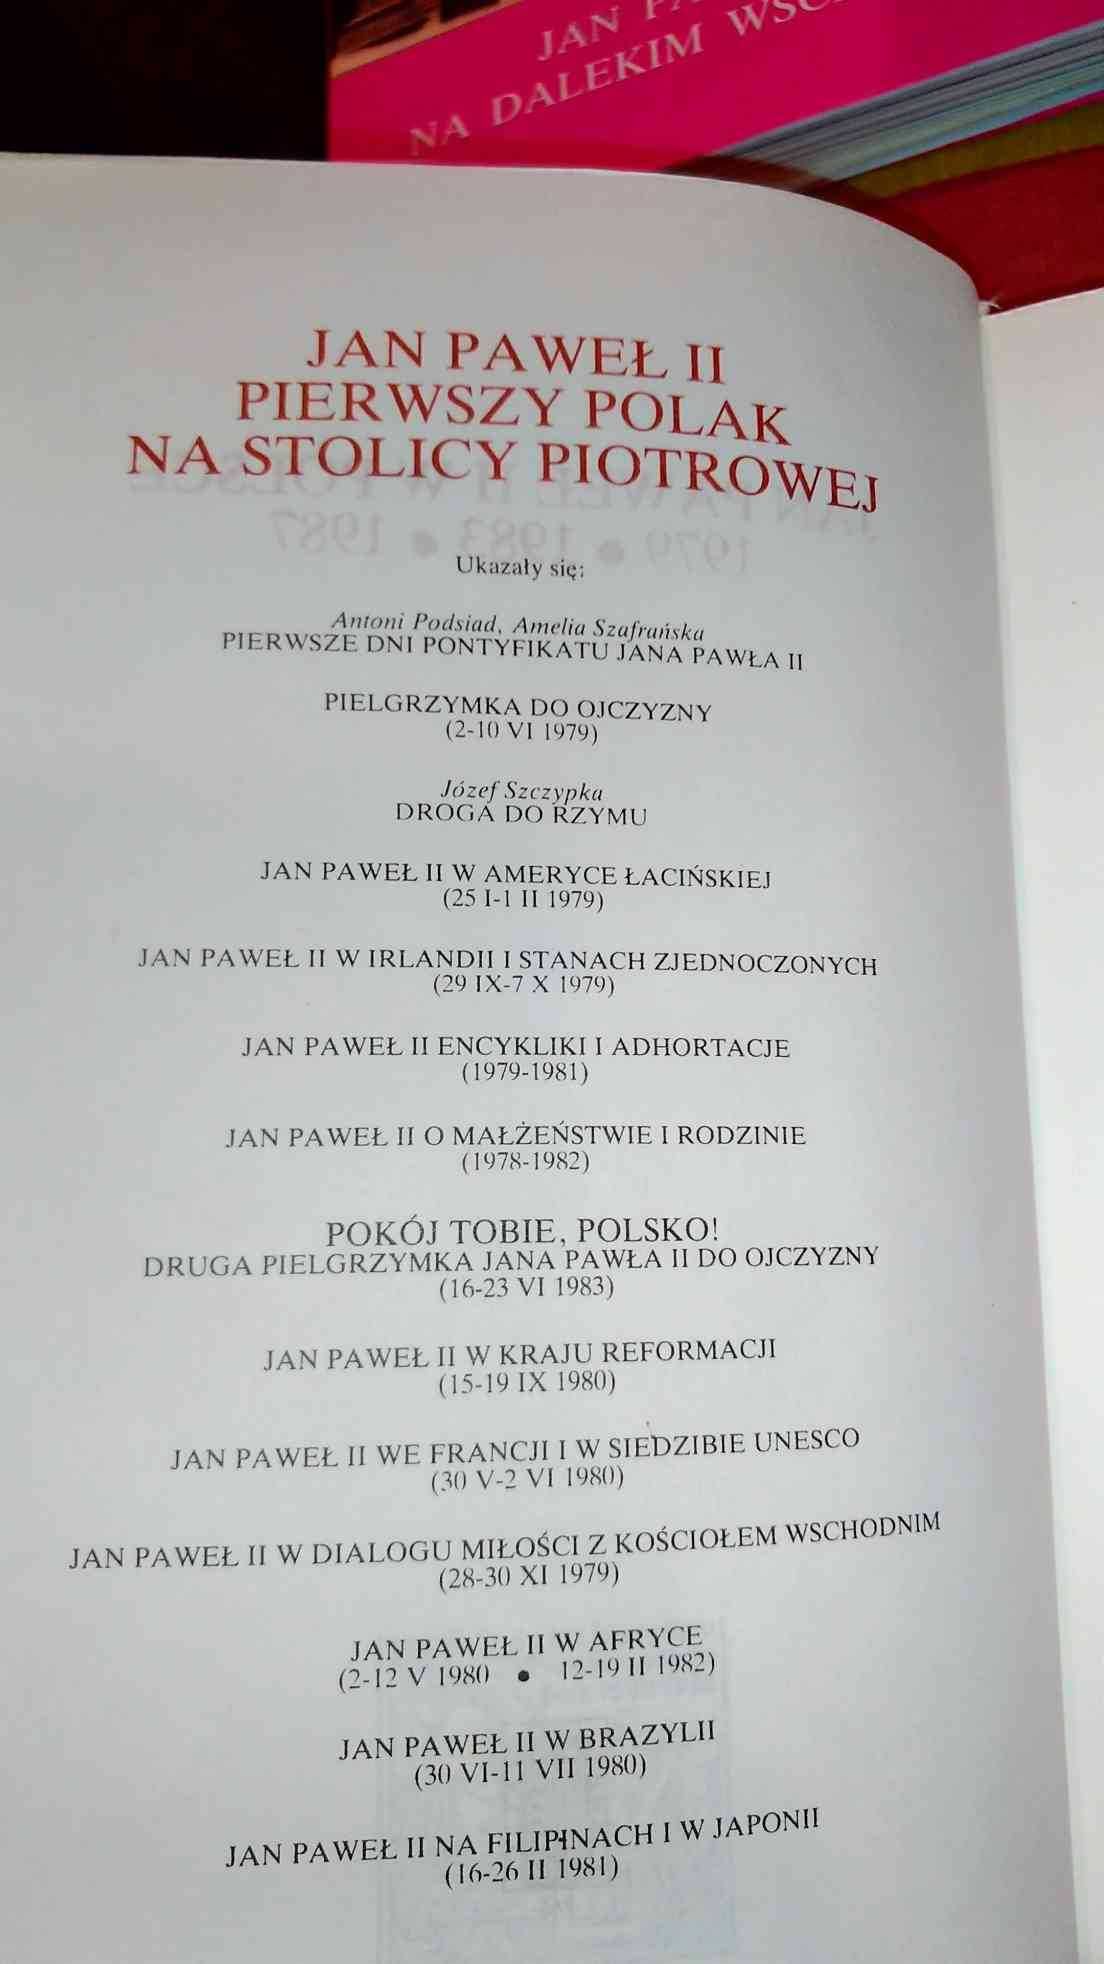 Jan Paweł Ii W Polsce
1979 -1983 -1987